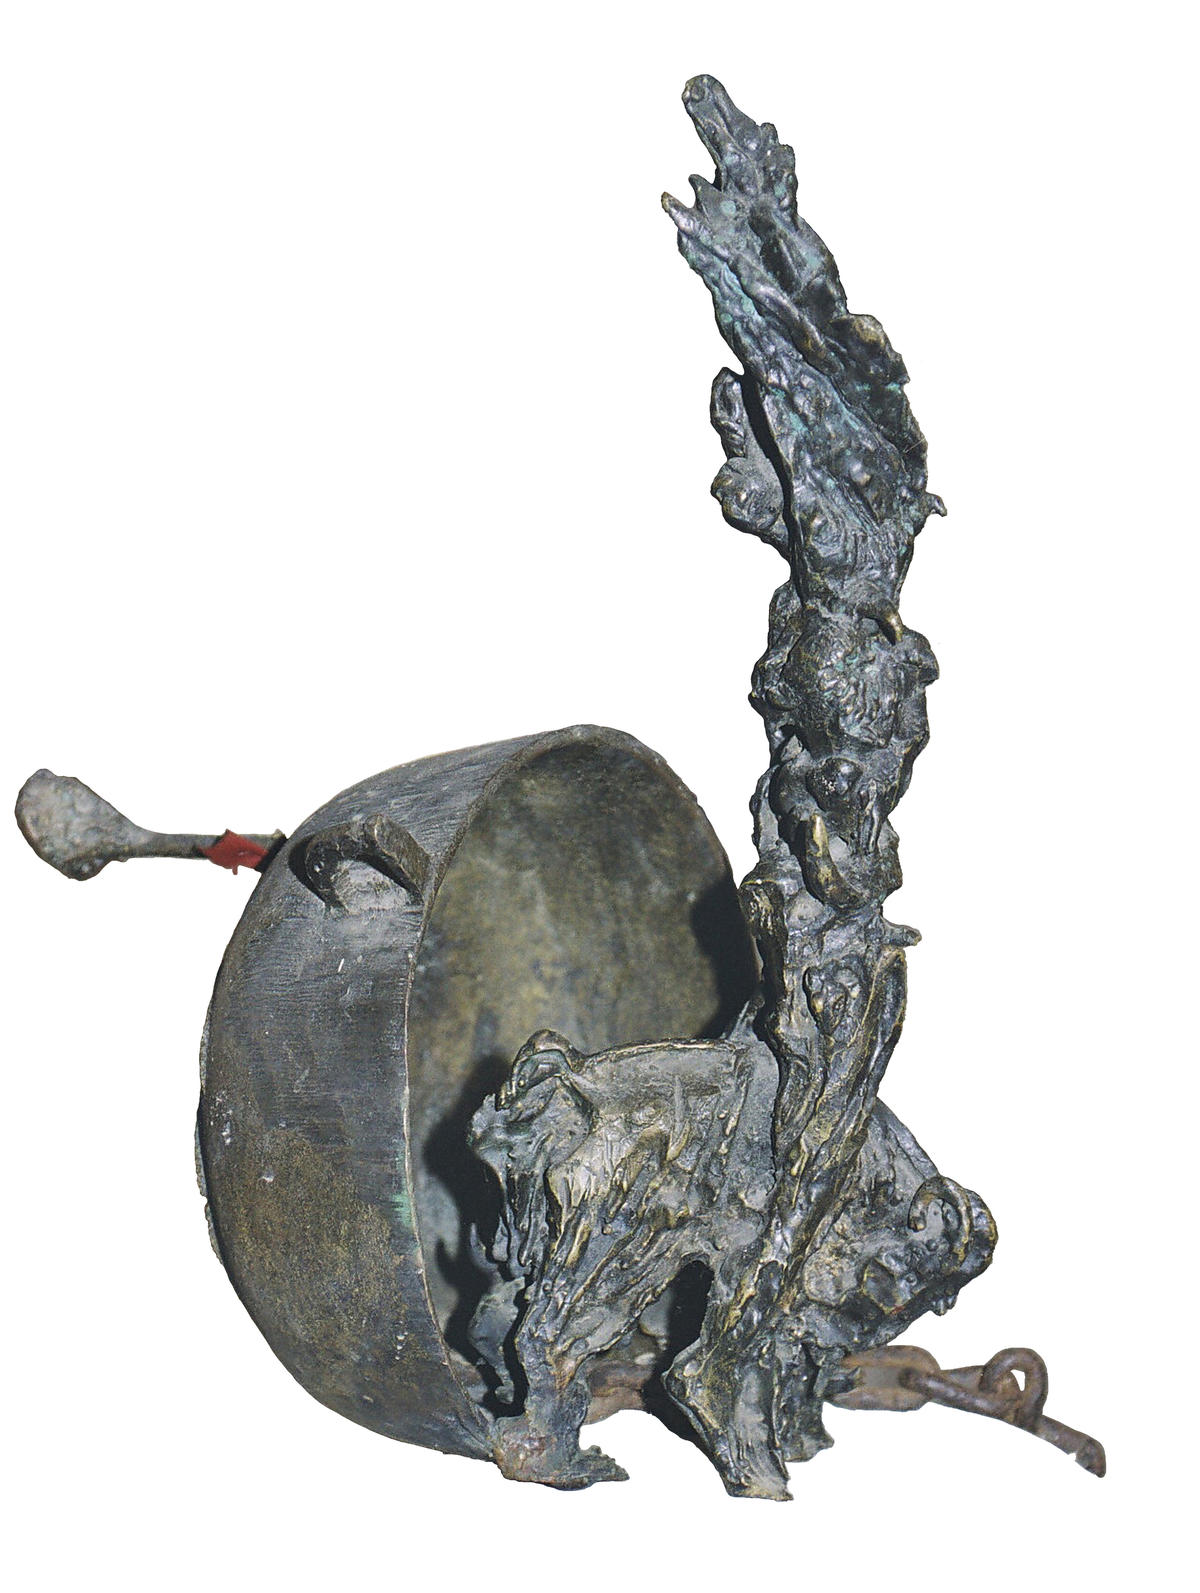 Nganga viva. 1990. Pieza en hierro y bronce. 40 x 35 x 35 cm